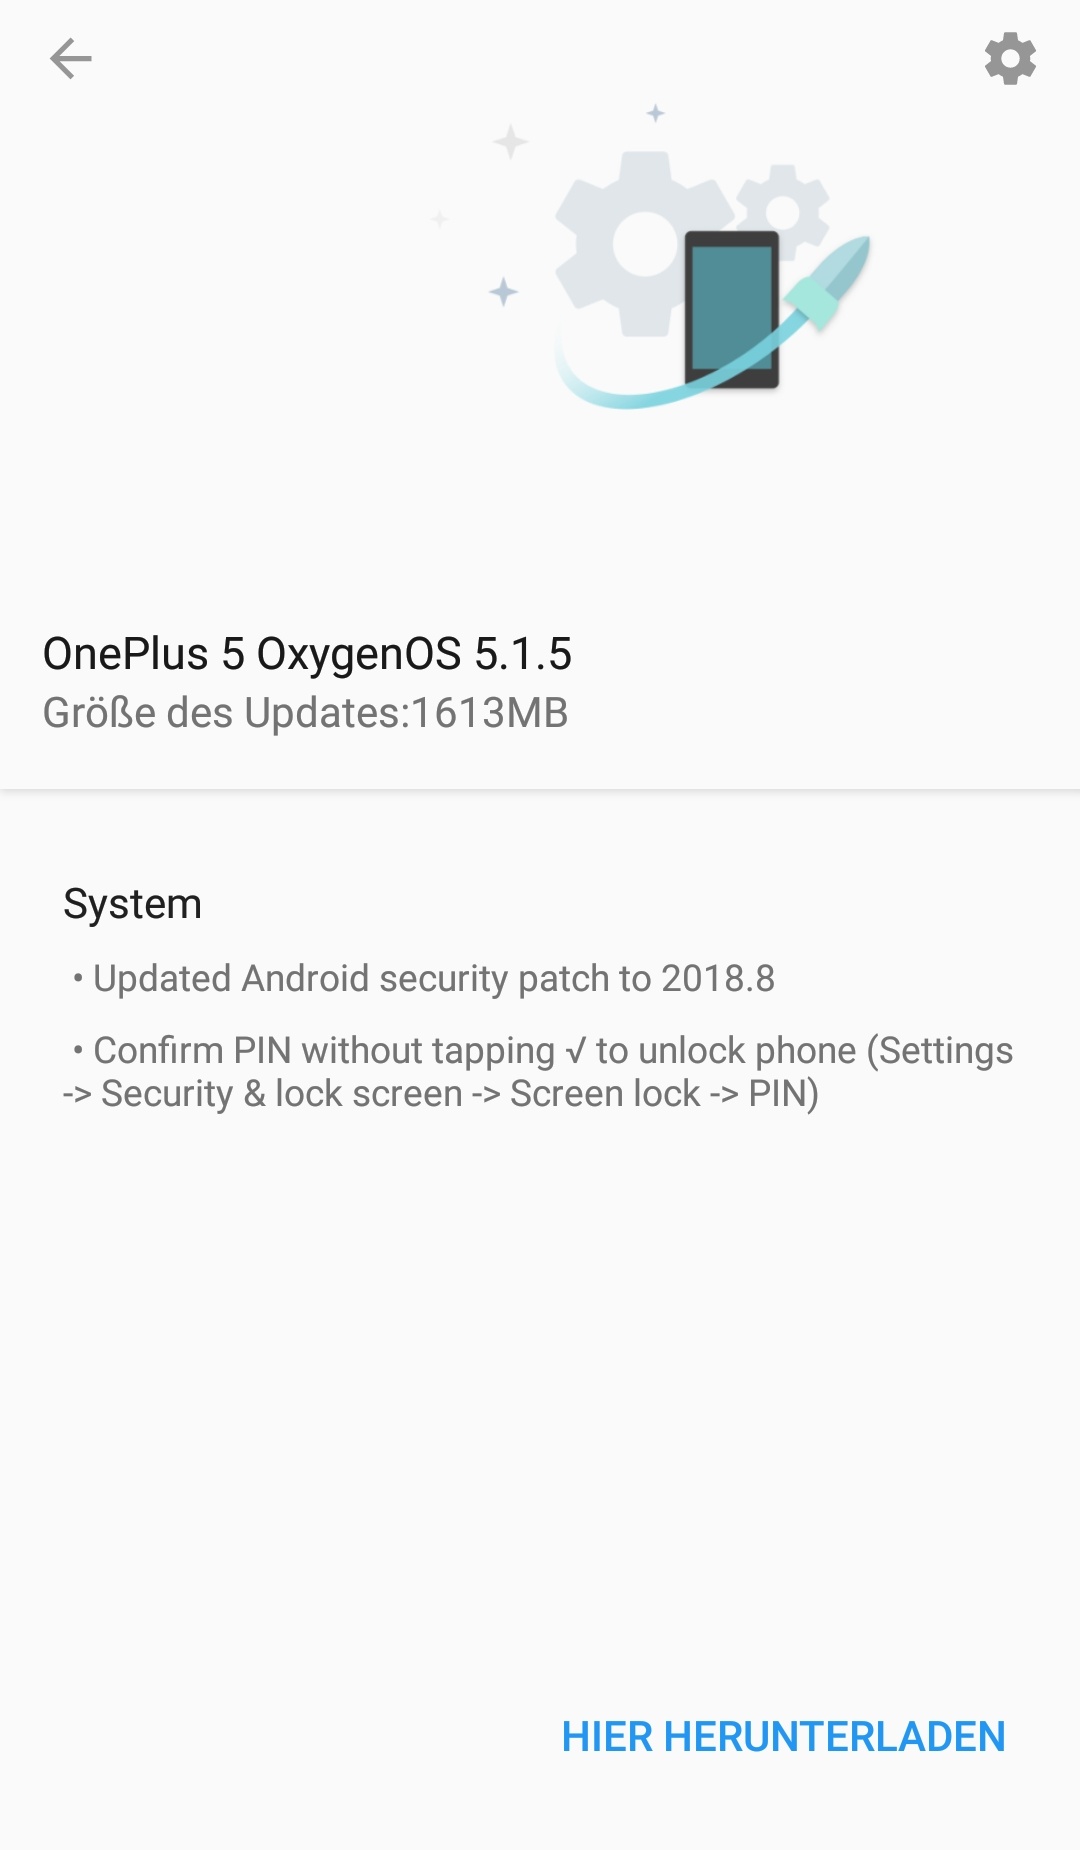 Oneplus 5 - OxygenOS 5.1.5